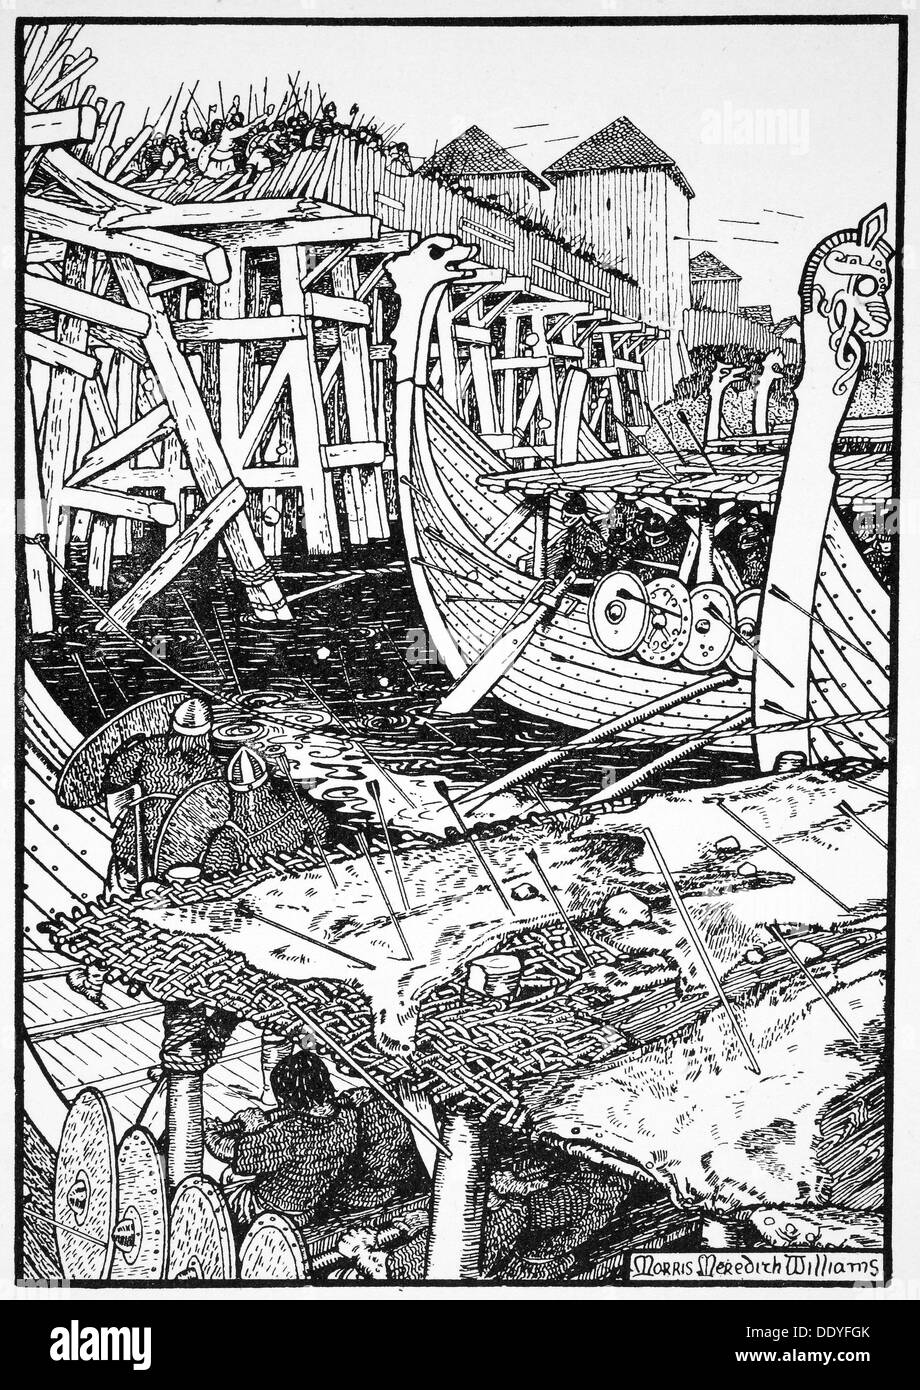 La battaglia di Ponte di Londra, 1014 (1913). Artista: Morris Meredith Williams Foto Stock